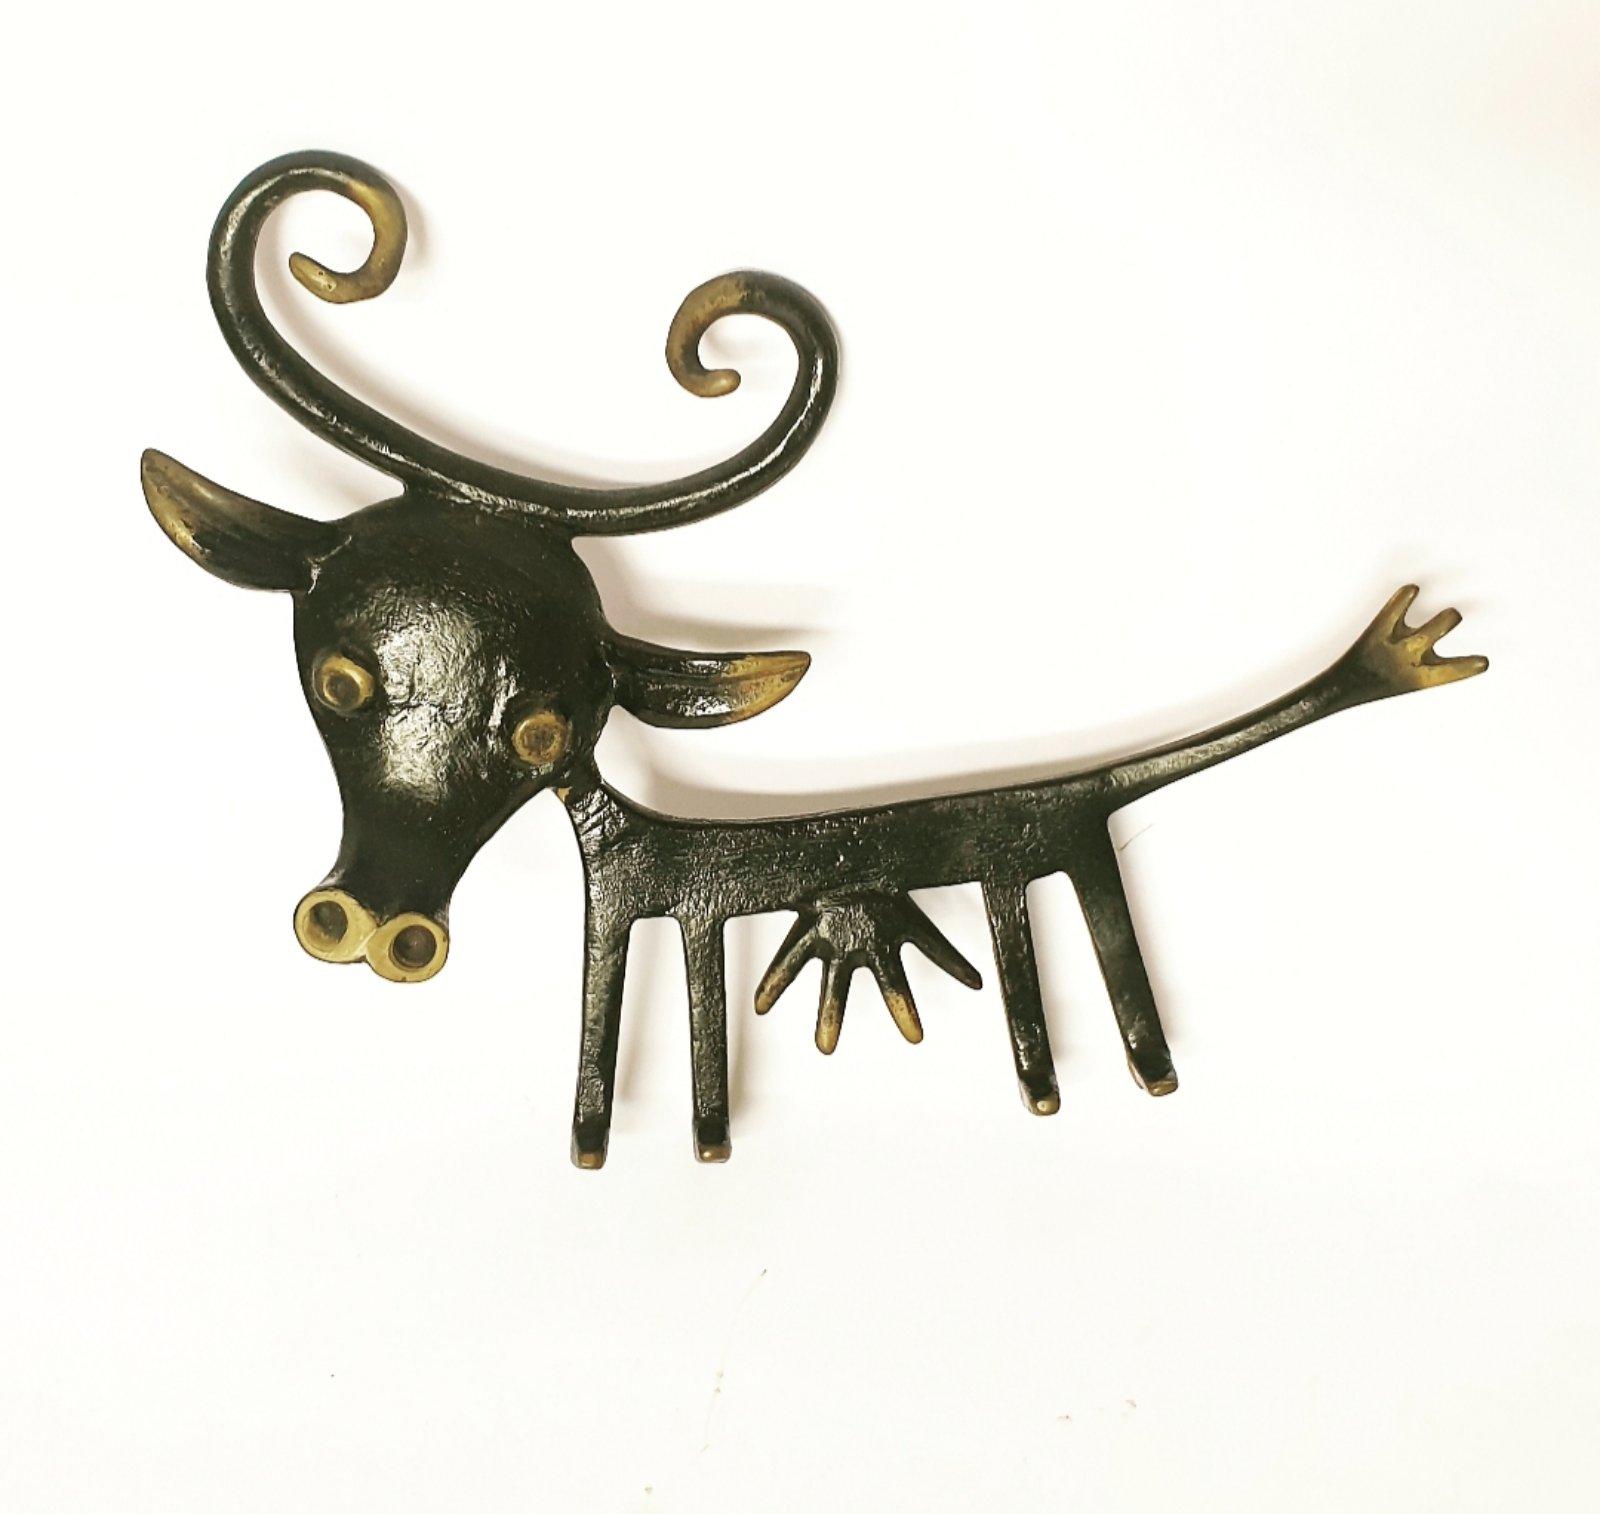 Porte-clés très spécial et rare, représentant une vache à l'allure amusante. Très grand. Il s'agit d'une pièce originale et non d'une reproduction.

Conçu par Walter Bosse, fabriqué par Hertha Baller, Vienne, dans les années 1950.

Ce porte-clés est